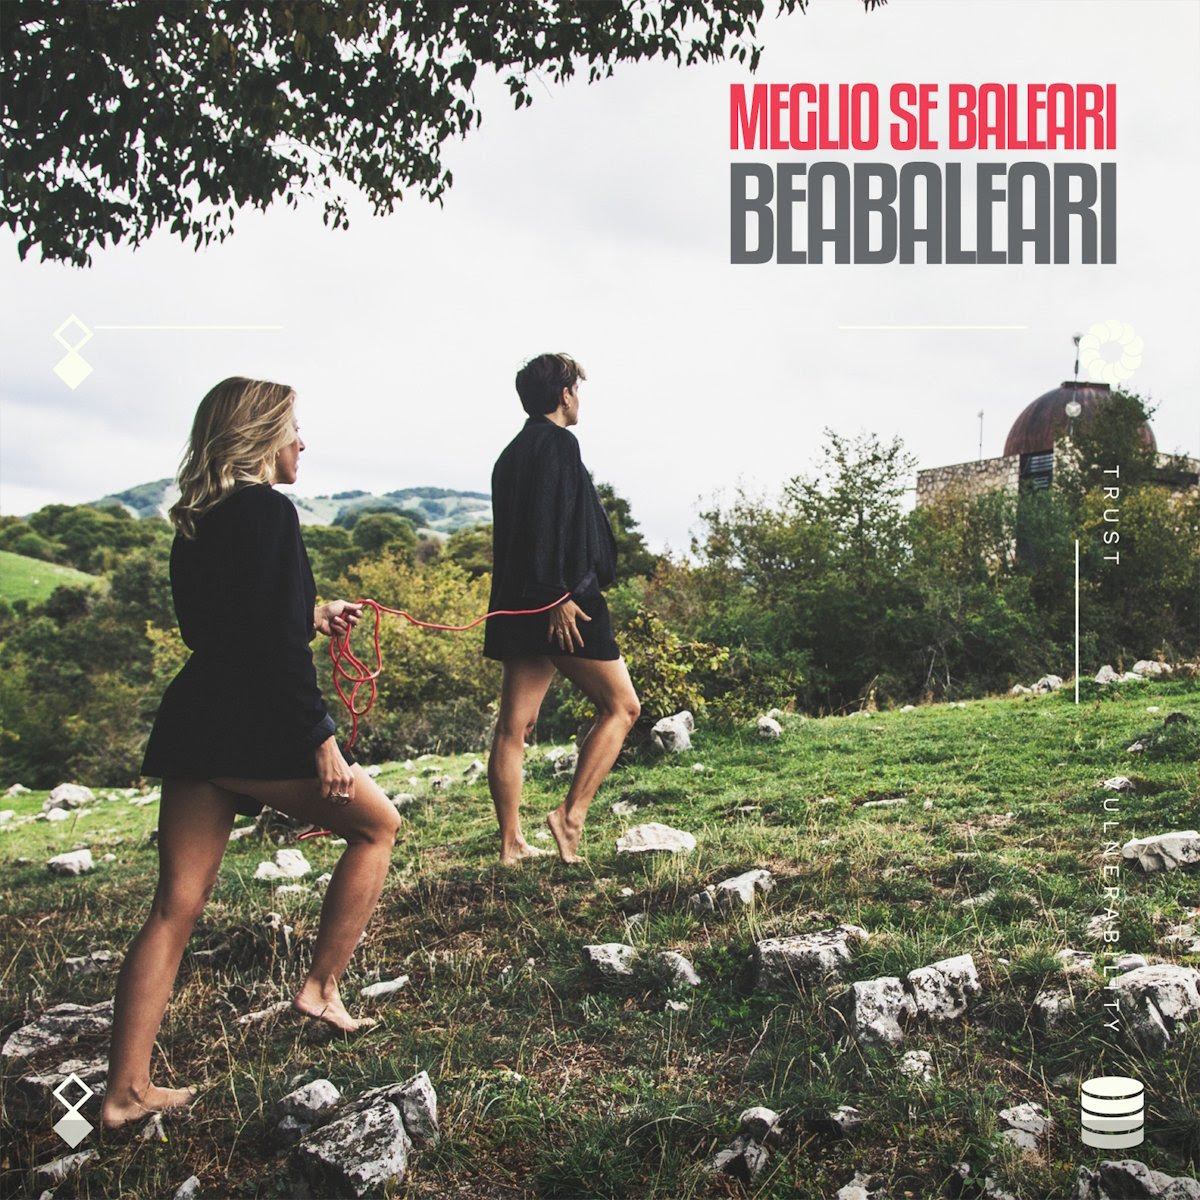 BEABALEARI: dal 17 novembre in radio il nuovo singolo “MEGLIO SE BALEARI”. Il video su Raiplay e Rai 5